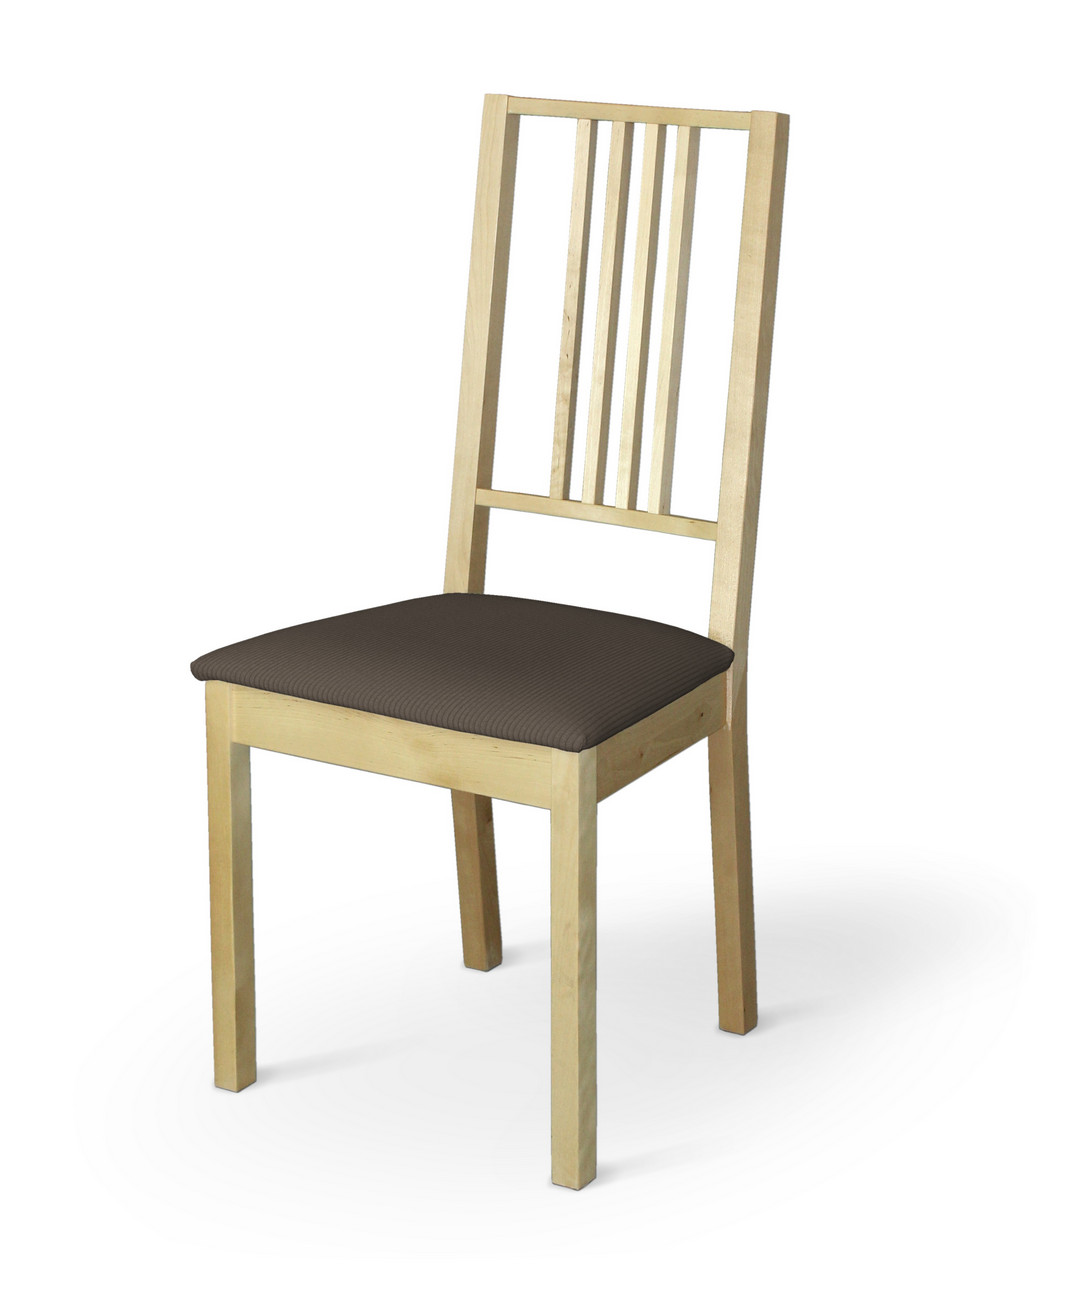 Dekoria Potah na sedák židle Börje, hnědá, potah sedák židle Börje, Manchester, 701-37